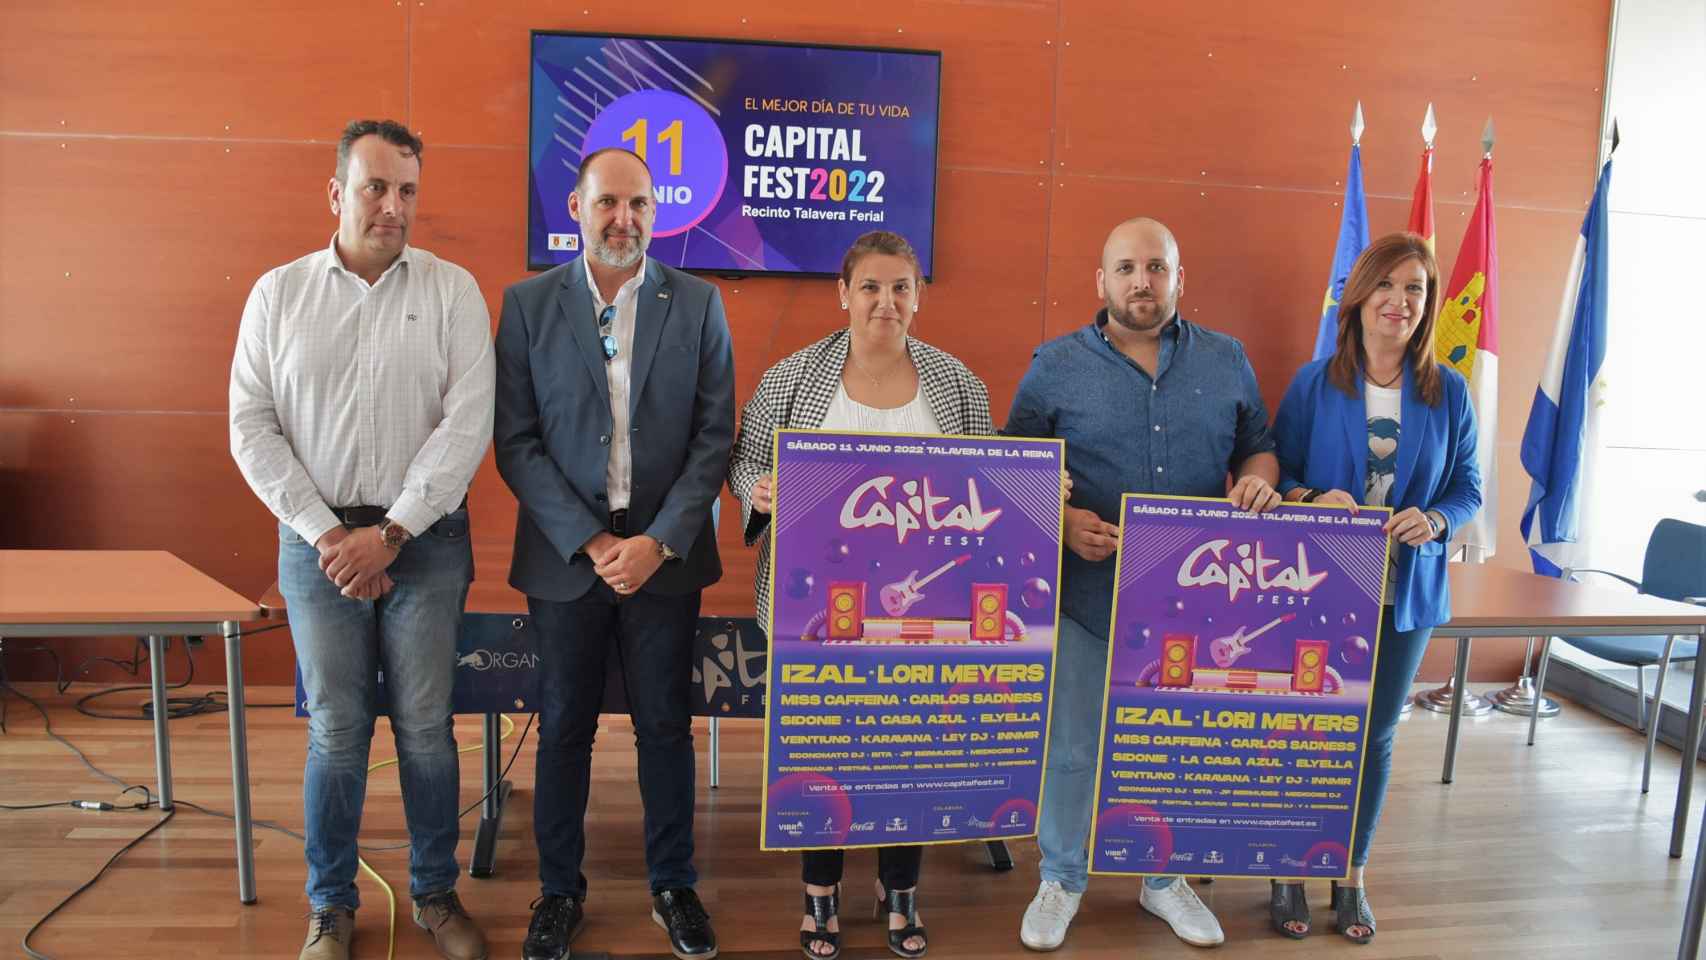 Más de 13.000 personas vibrarán con IZAL o Lori Meyers en el Capital Fest de Talavera